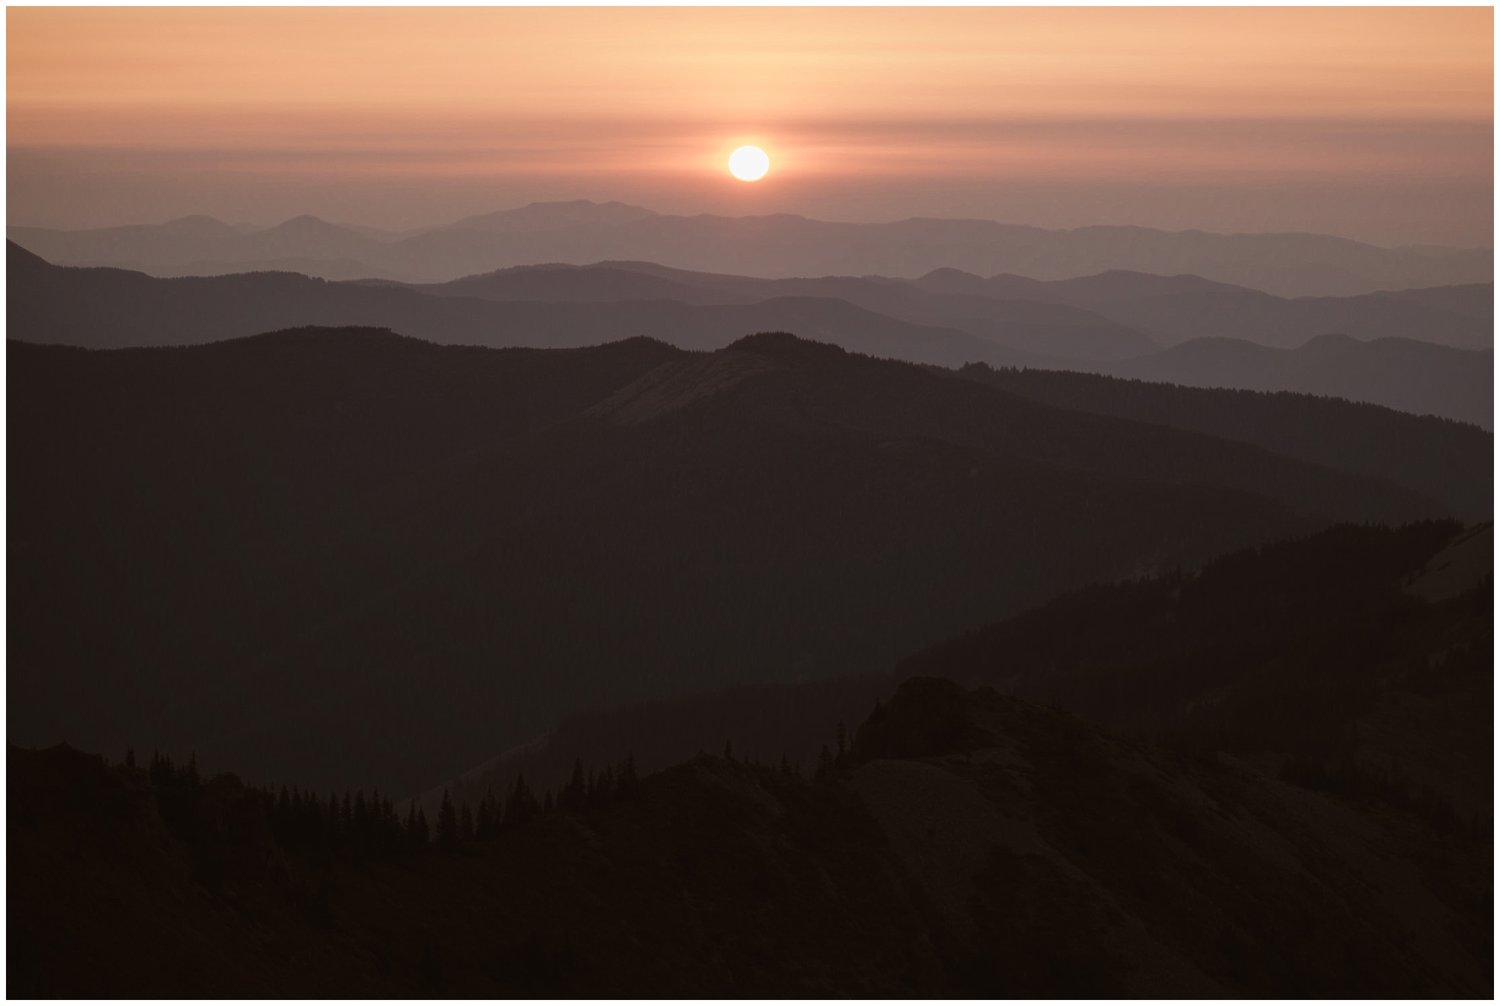 Landscape of mountains at sunrise in Washington.